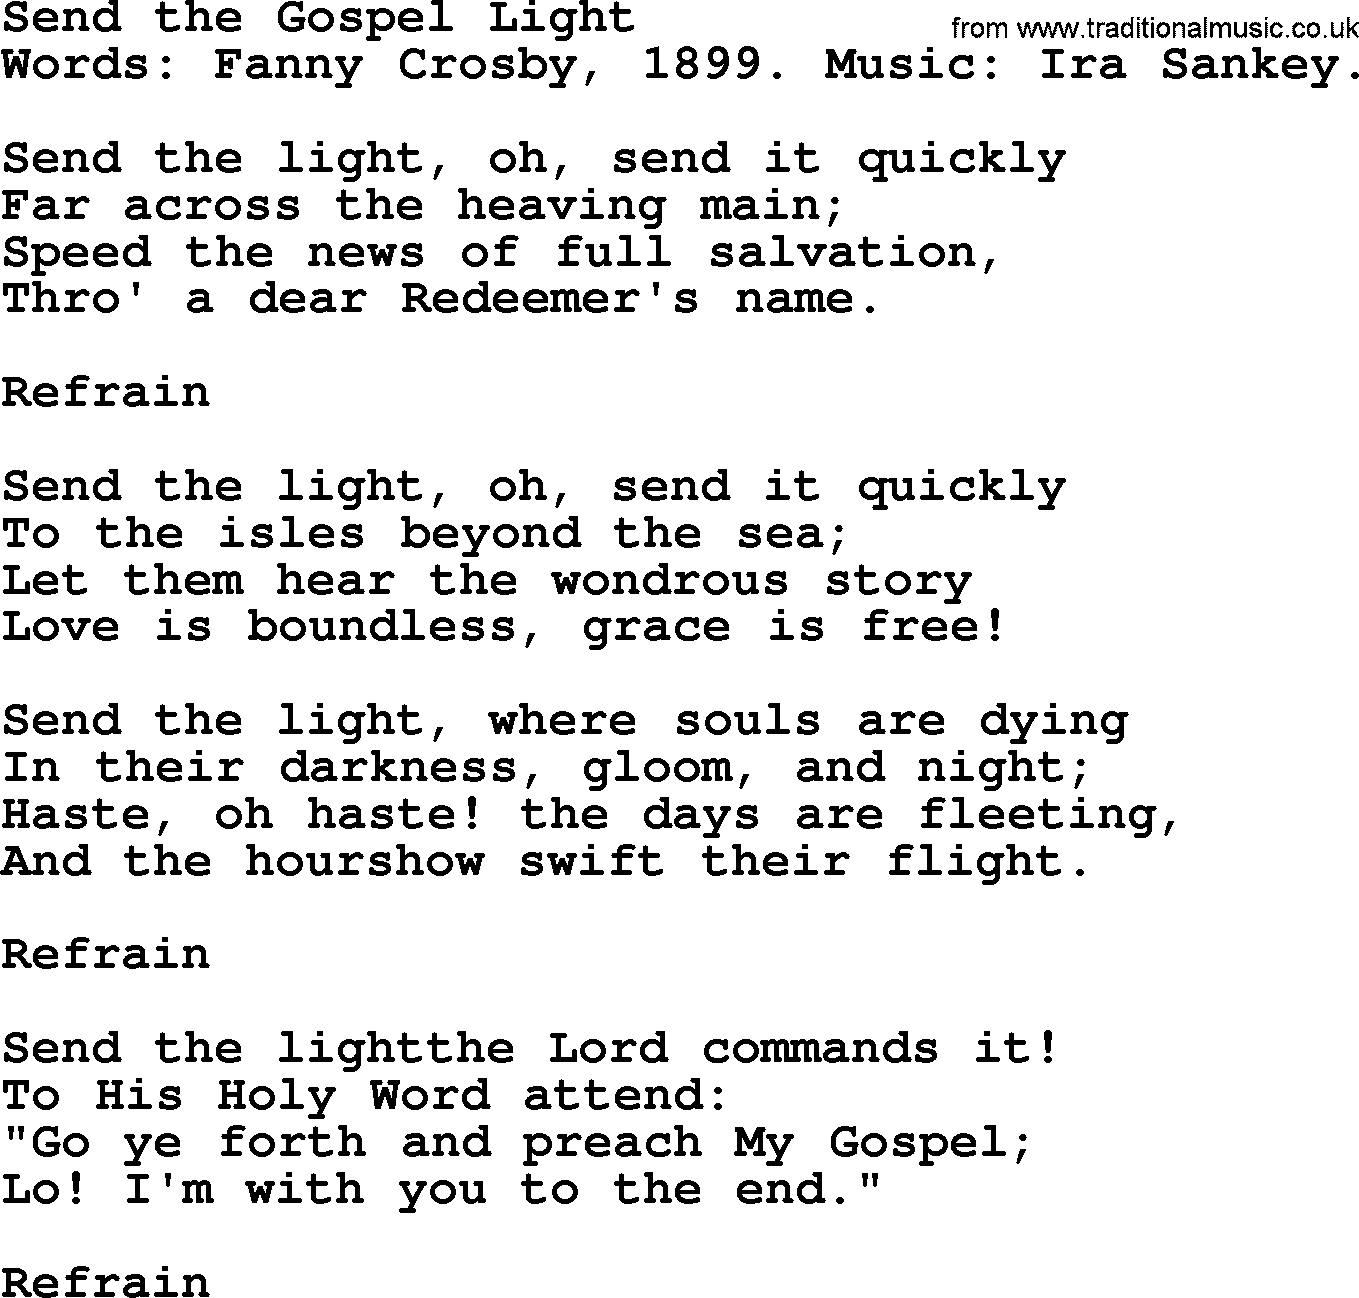 Fanny Crosby song: Send The Gospel Light, lyrics